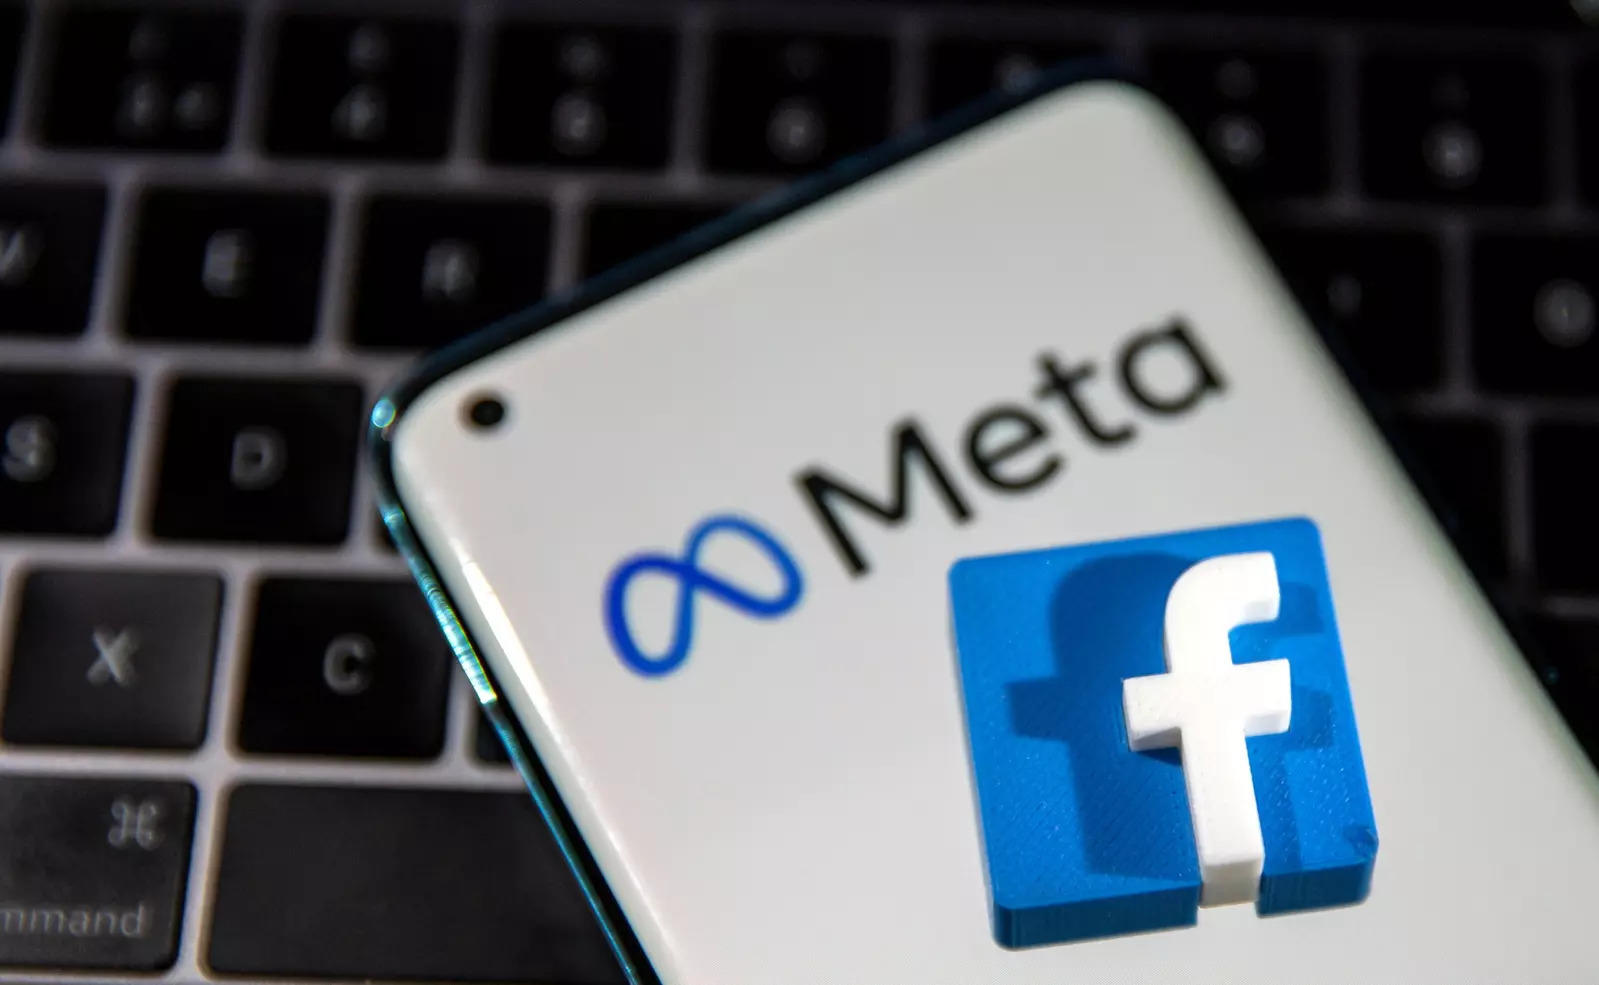 EU internet regulation to push Facebook to sanitise Metaverse platforms